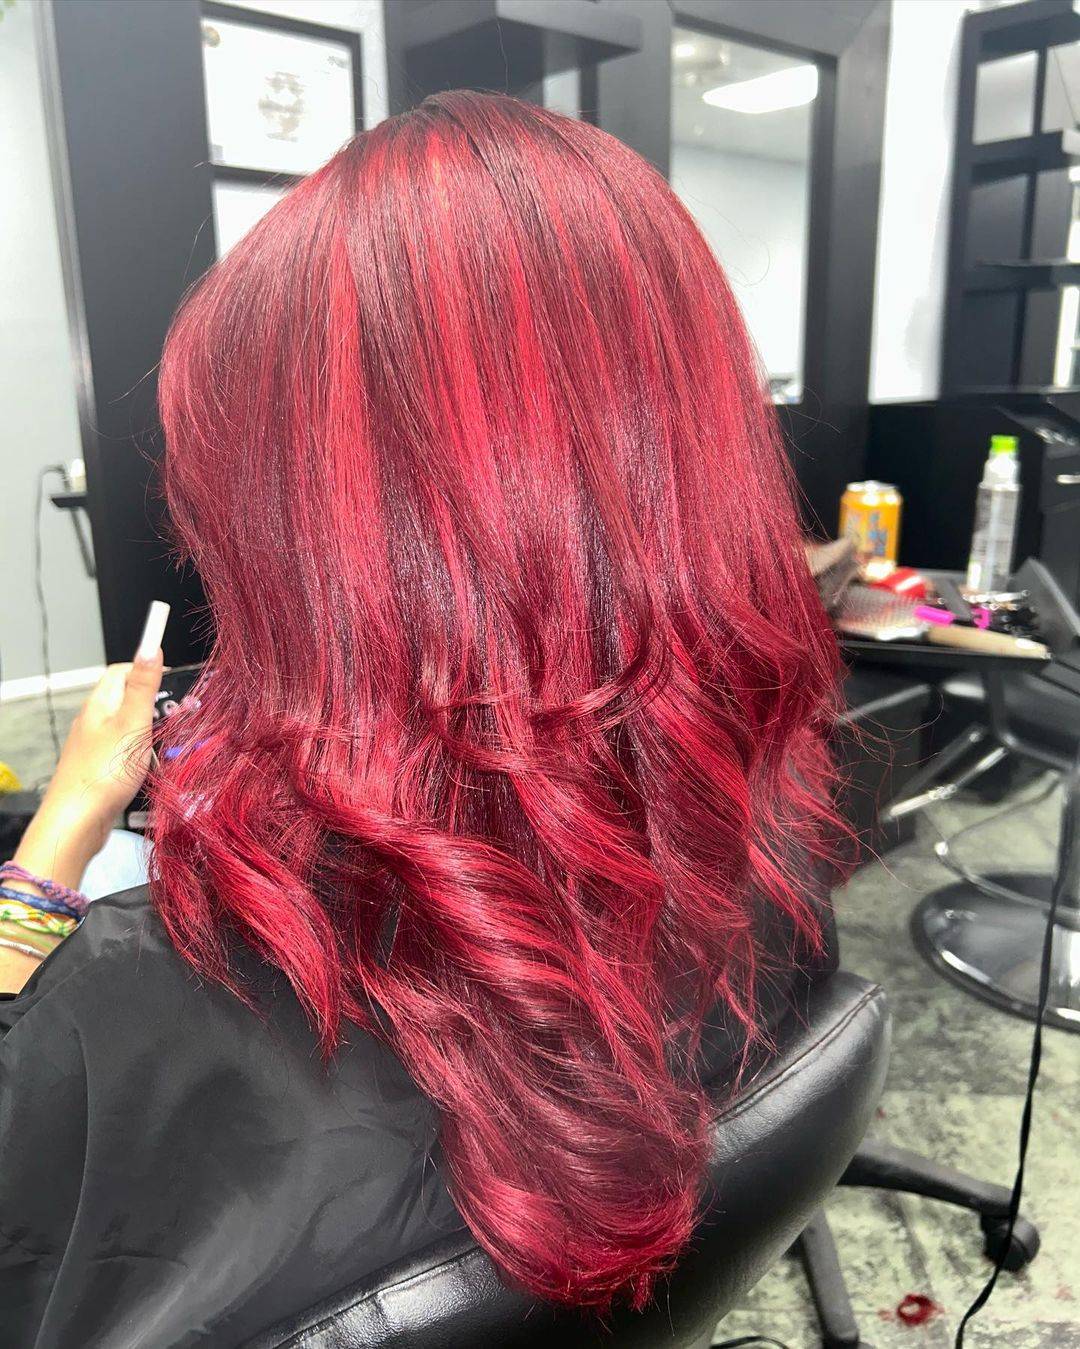 Burgundy hair color 173 burgundy hair color | burgundy hair color for women | burgundy hair color highlights Burgundy Hair Color